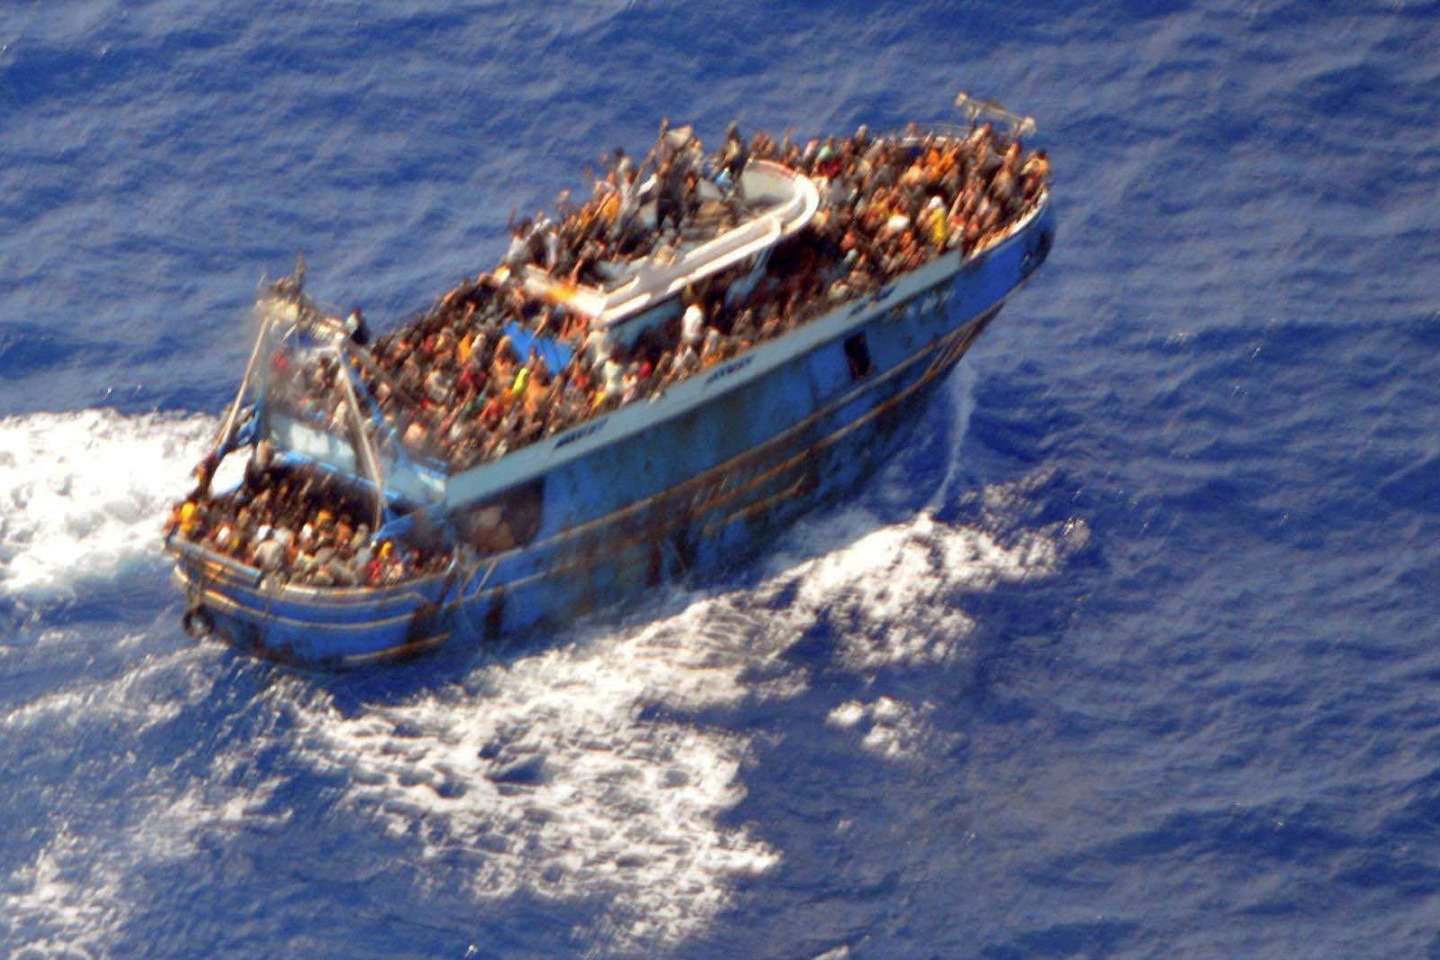 La Grèce a ignoré une offre d’avion sur le lieu de naufrage de migrants, affirme l’agence Frontex